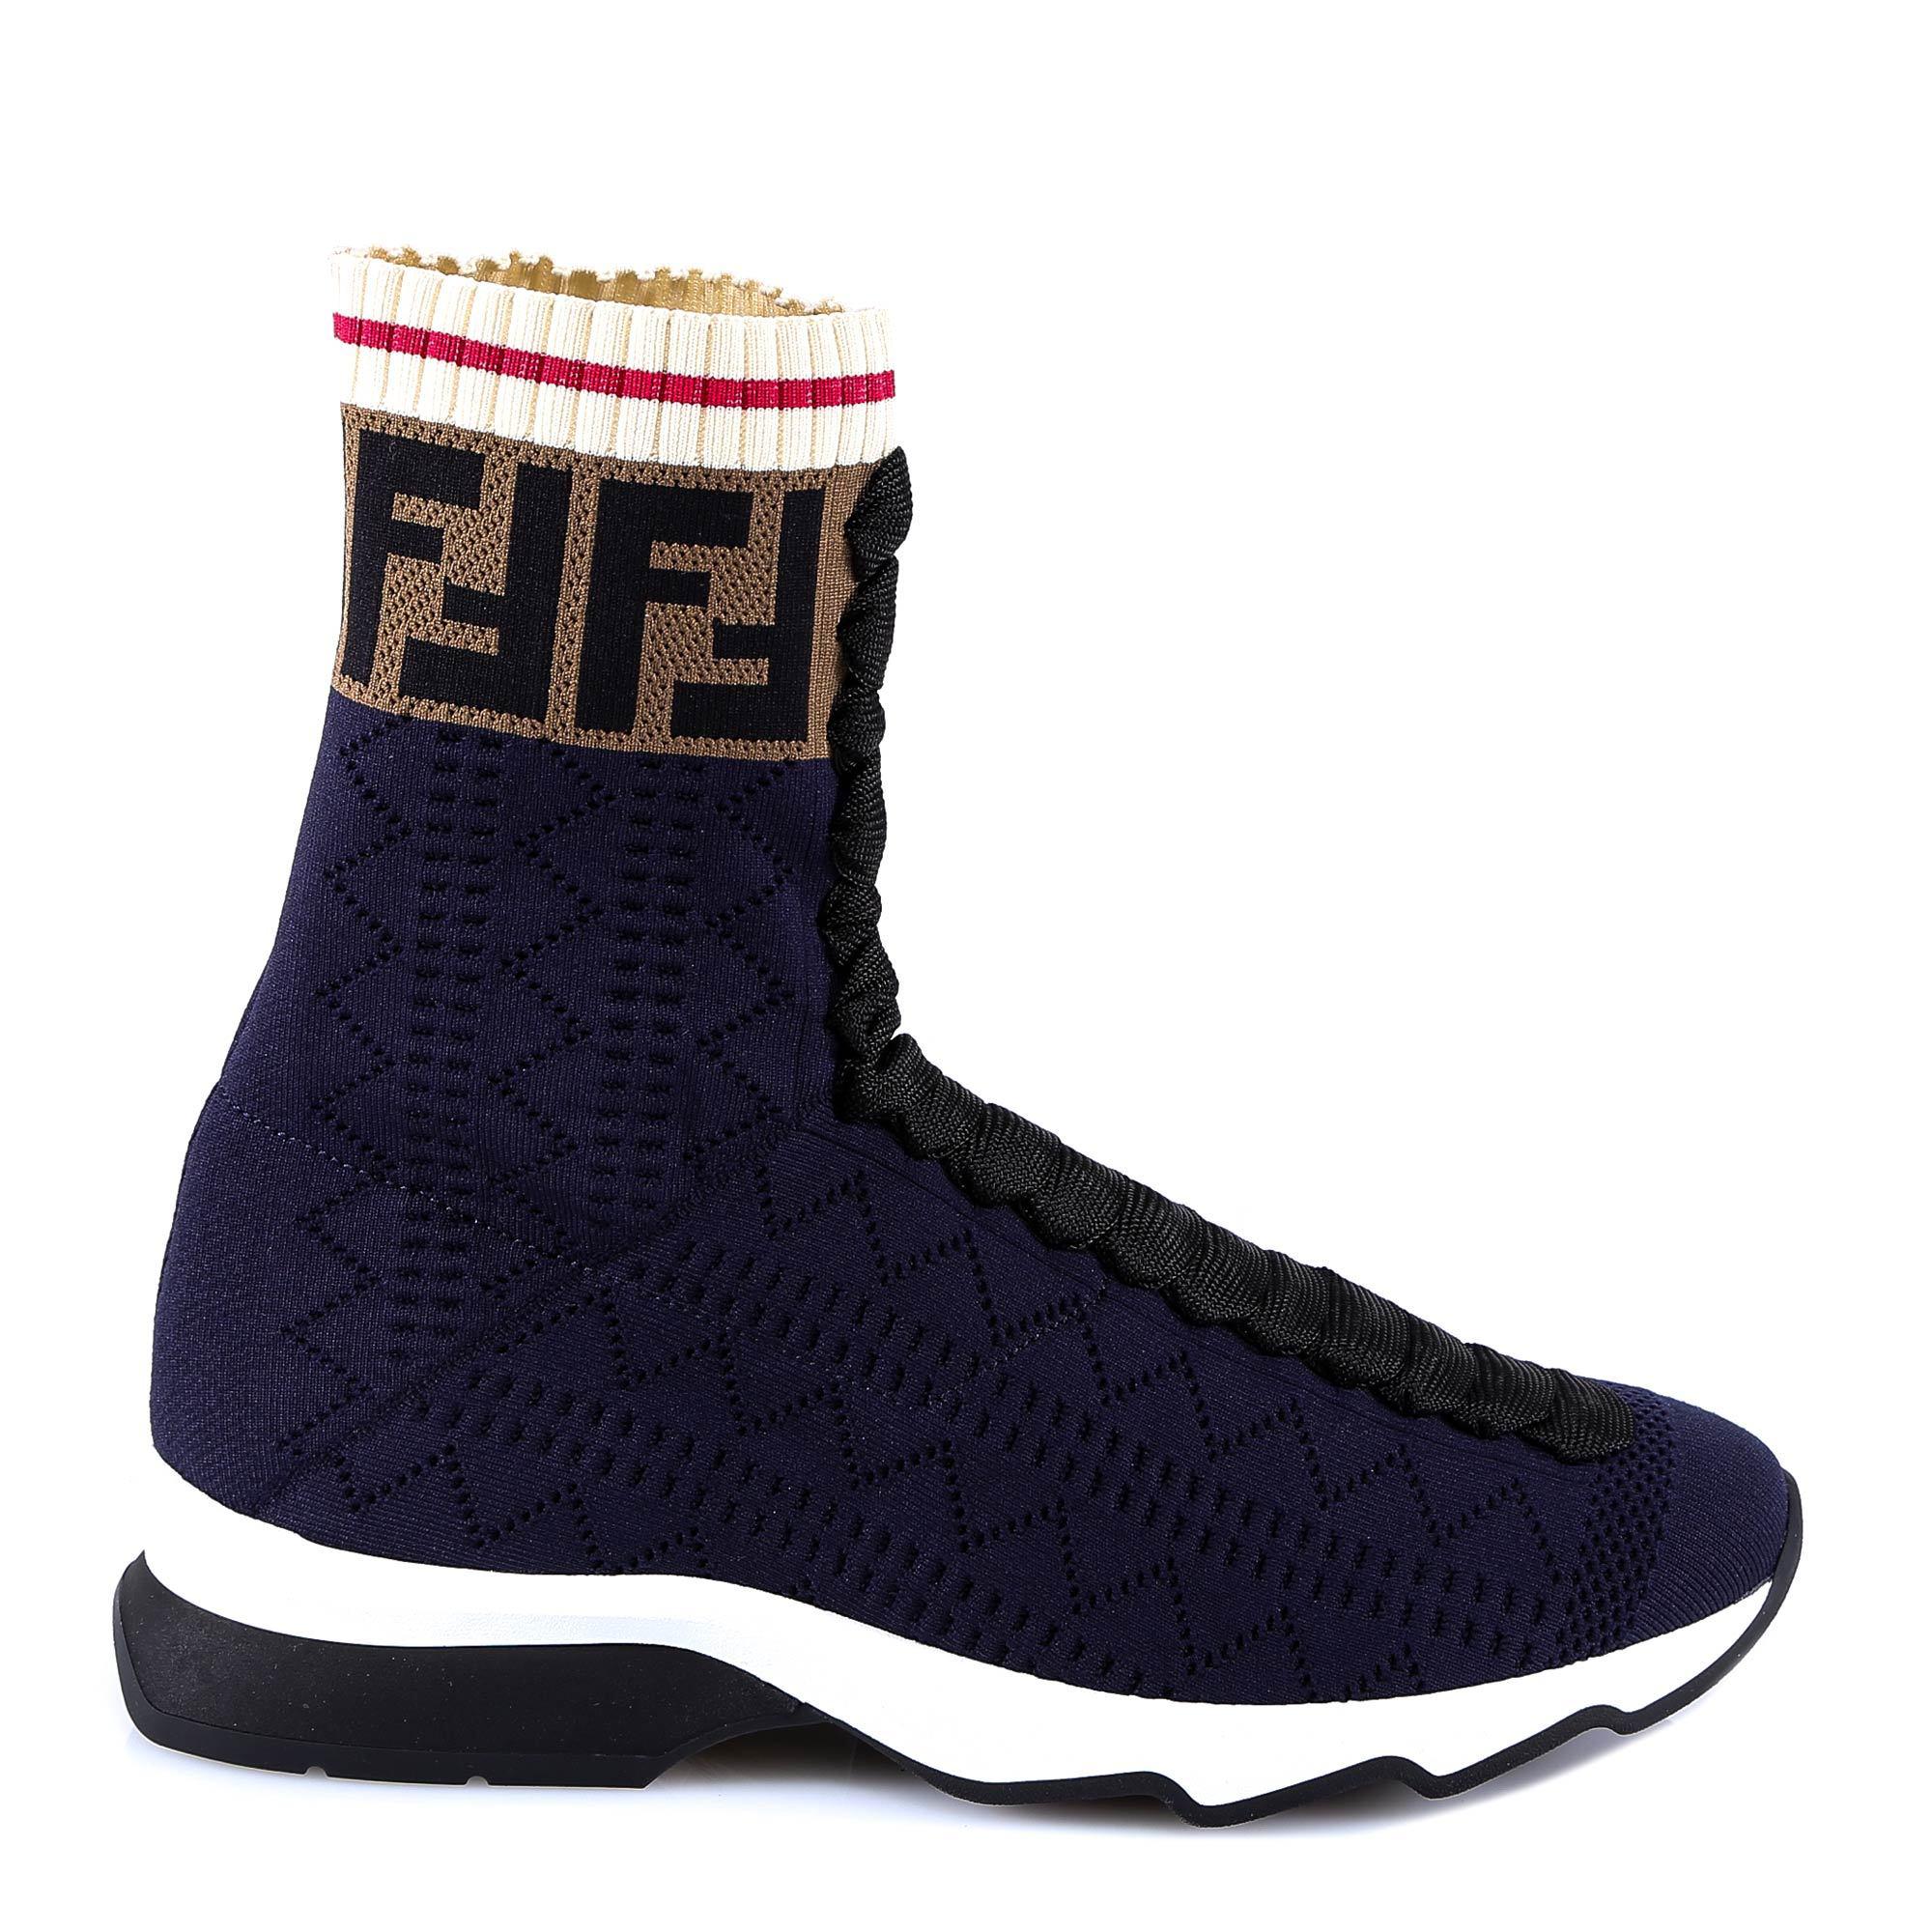 Fendi Ff Motif Sneaker Boots in Blue Navy (Blue) - Lyst